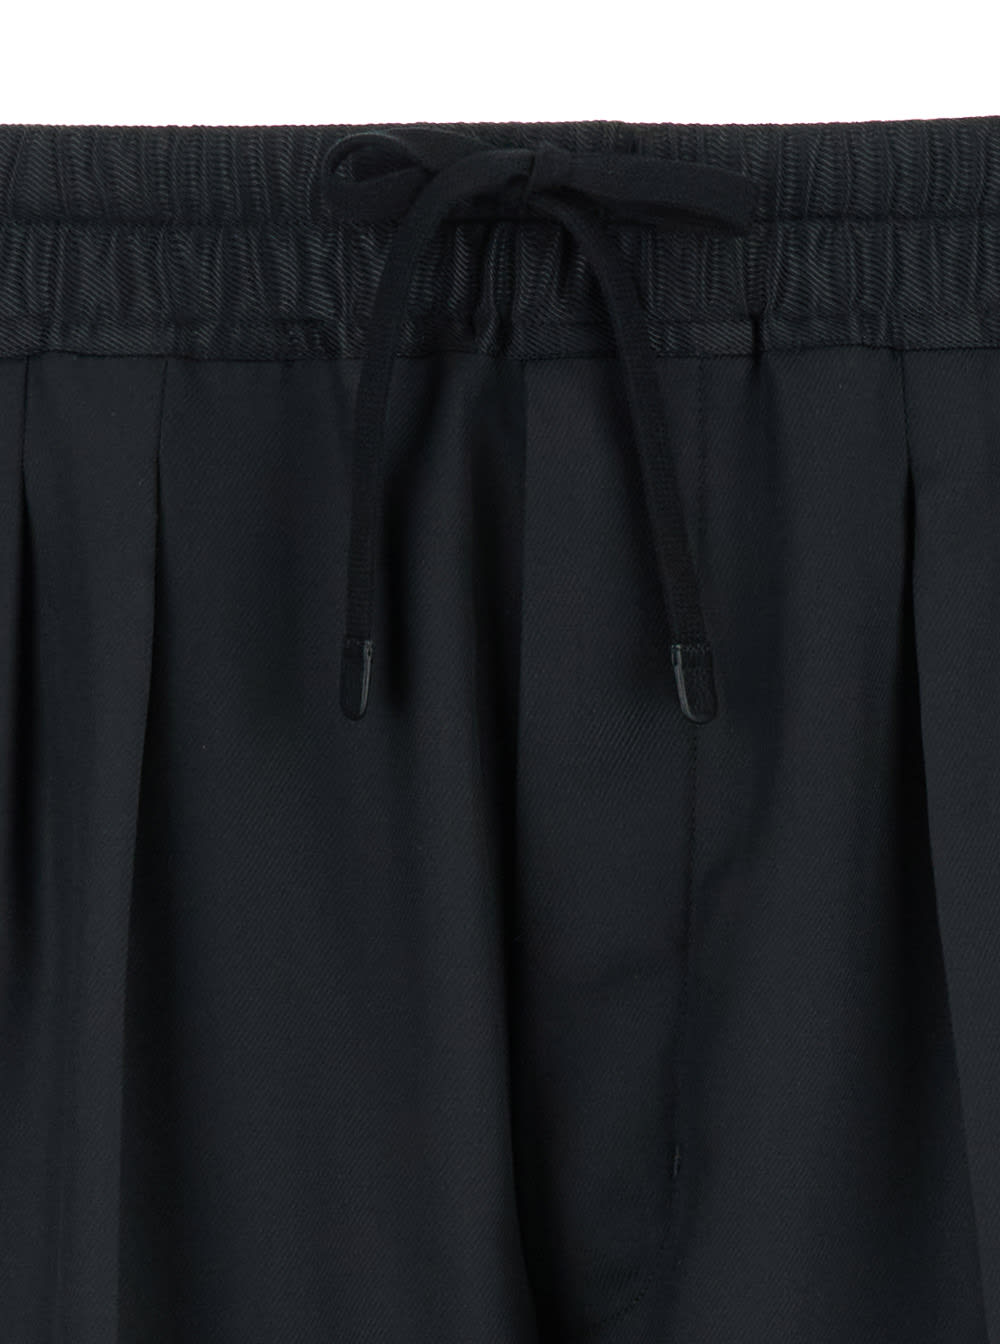 Shop Tom Ford Black Twill Bermuda Shorts In Silk Man